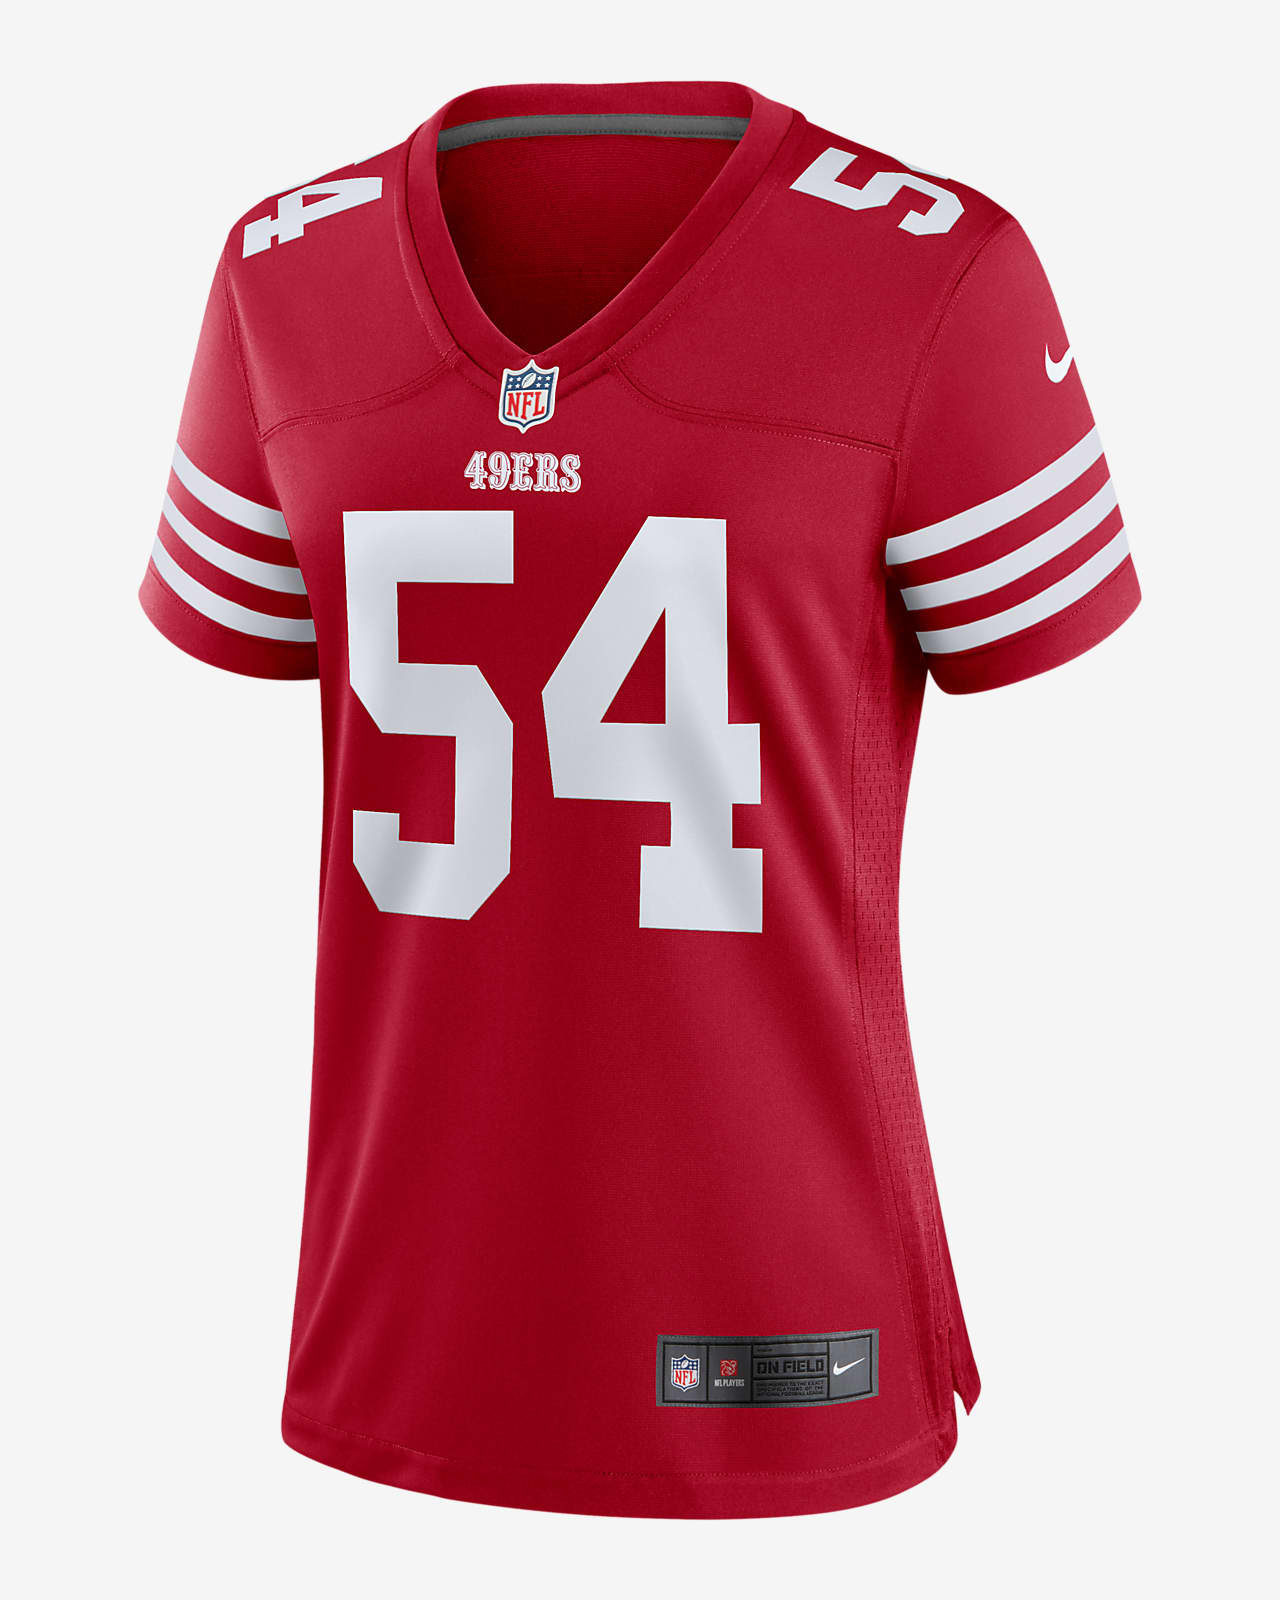 49ers women's jersey